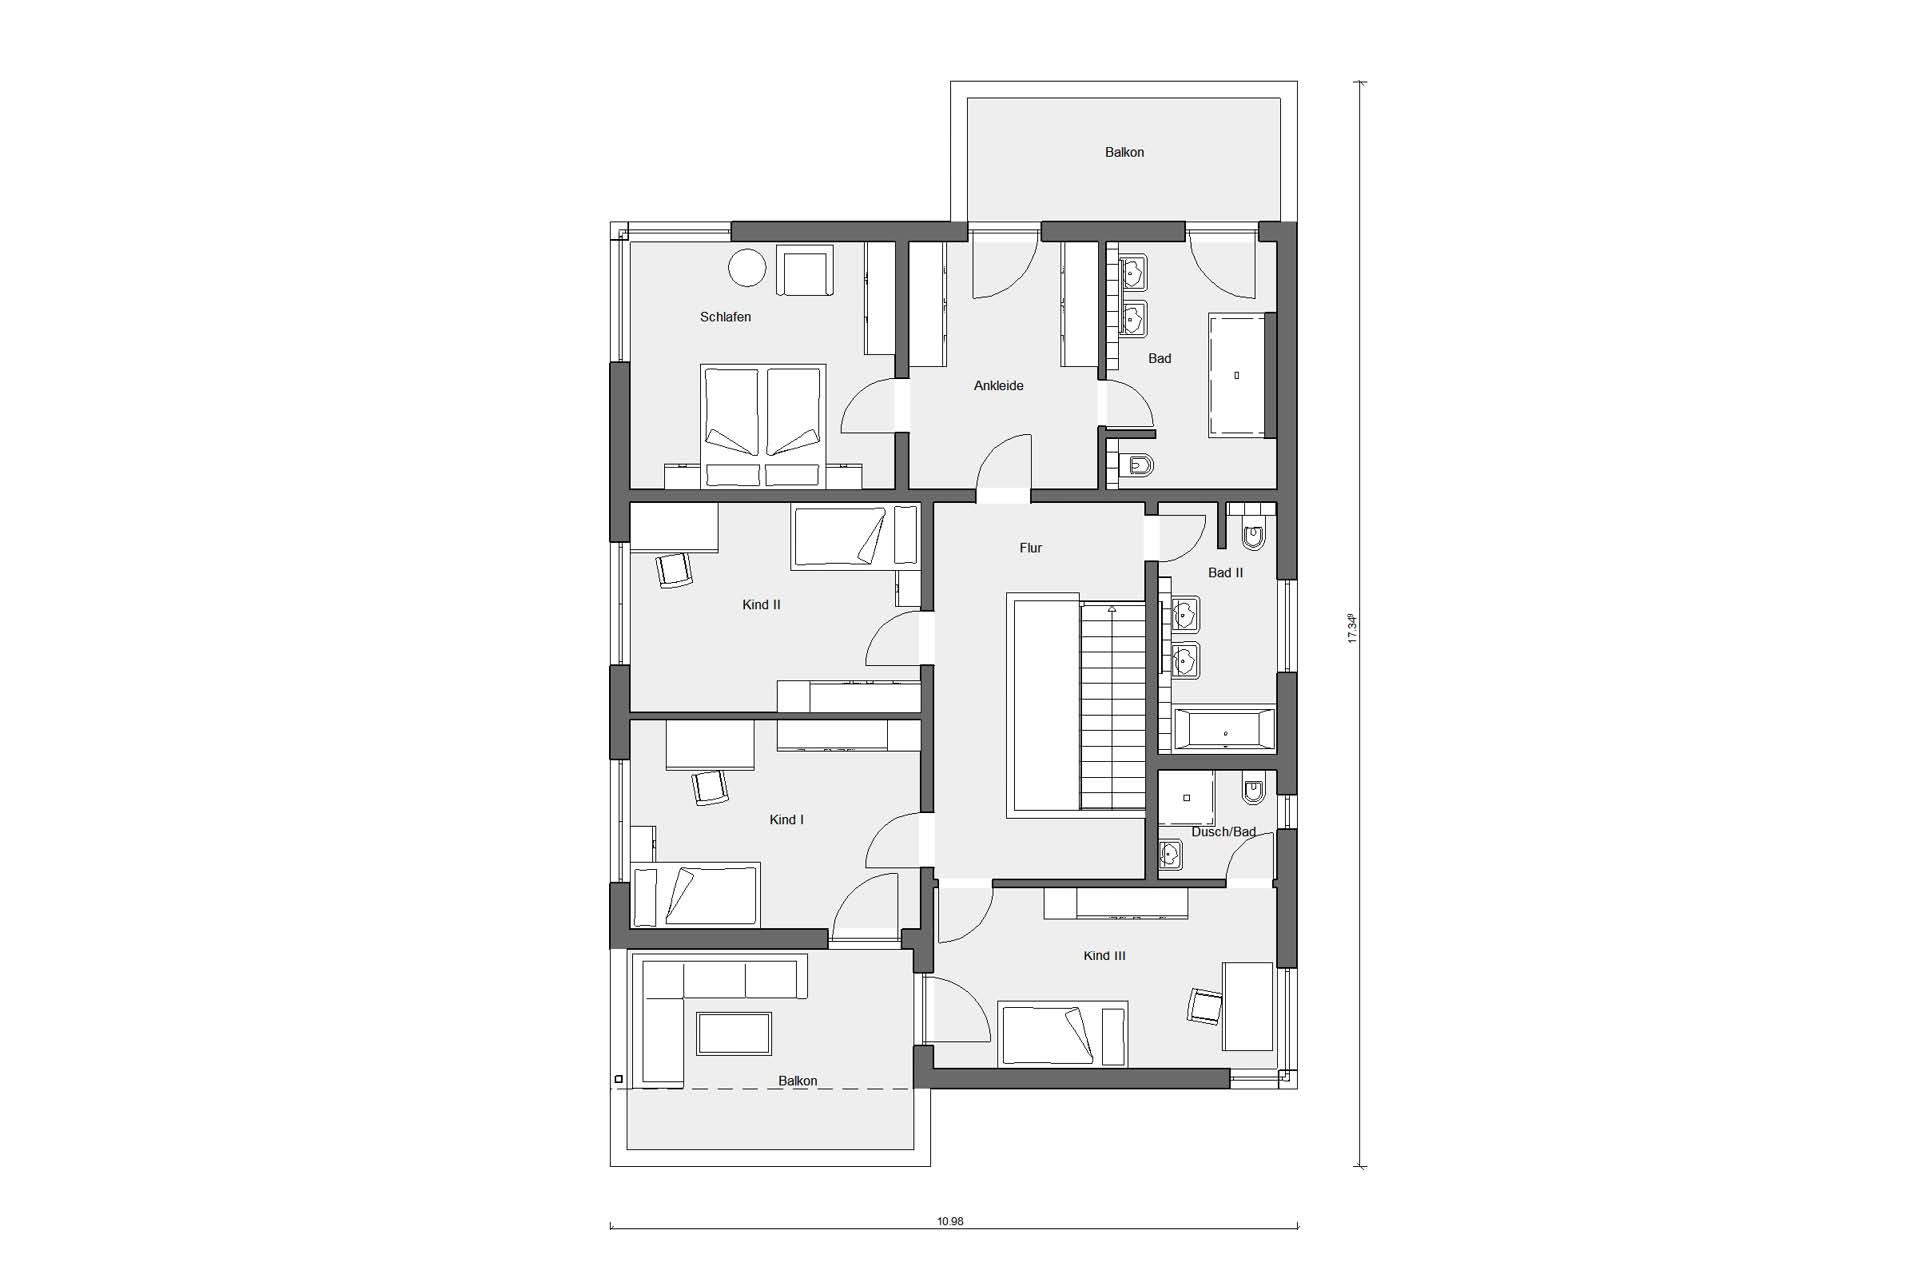 Plan d'étage grenier Maison individuelle style Bauhaus avec toit plat E 20-207.1